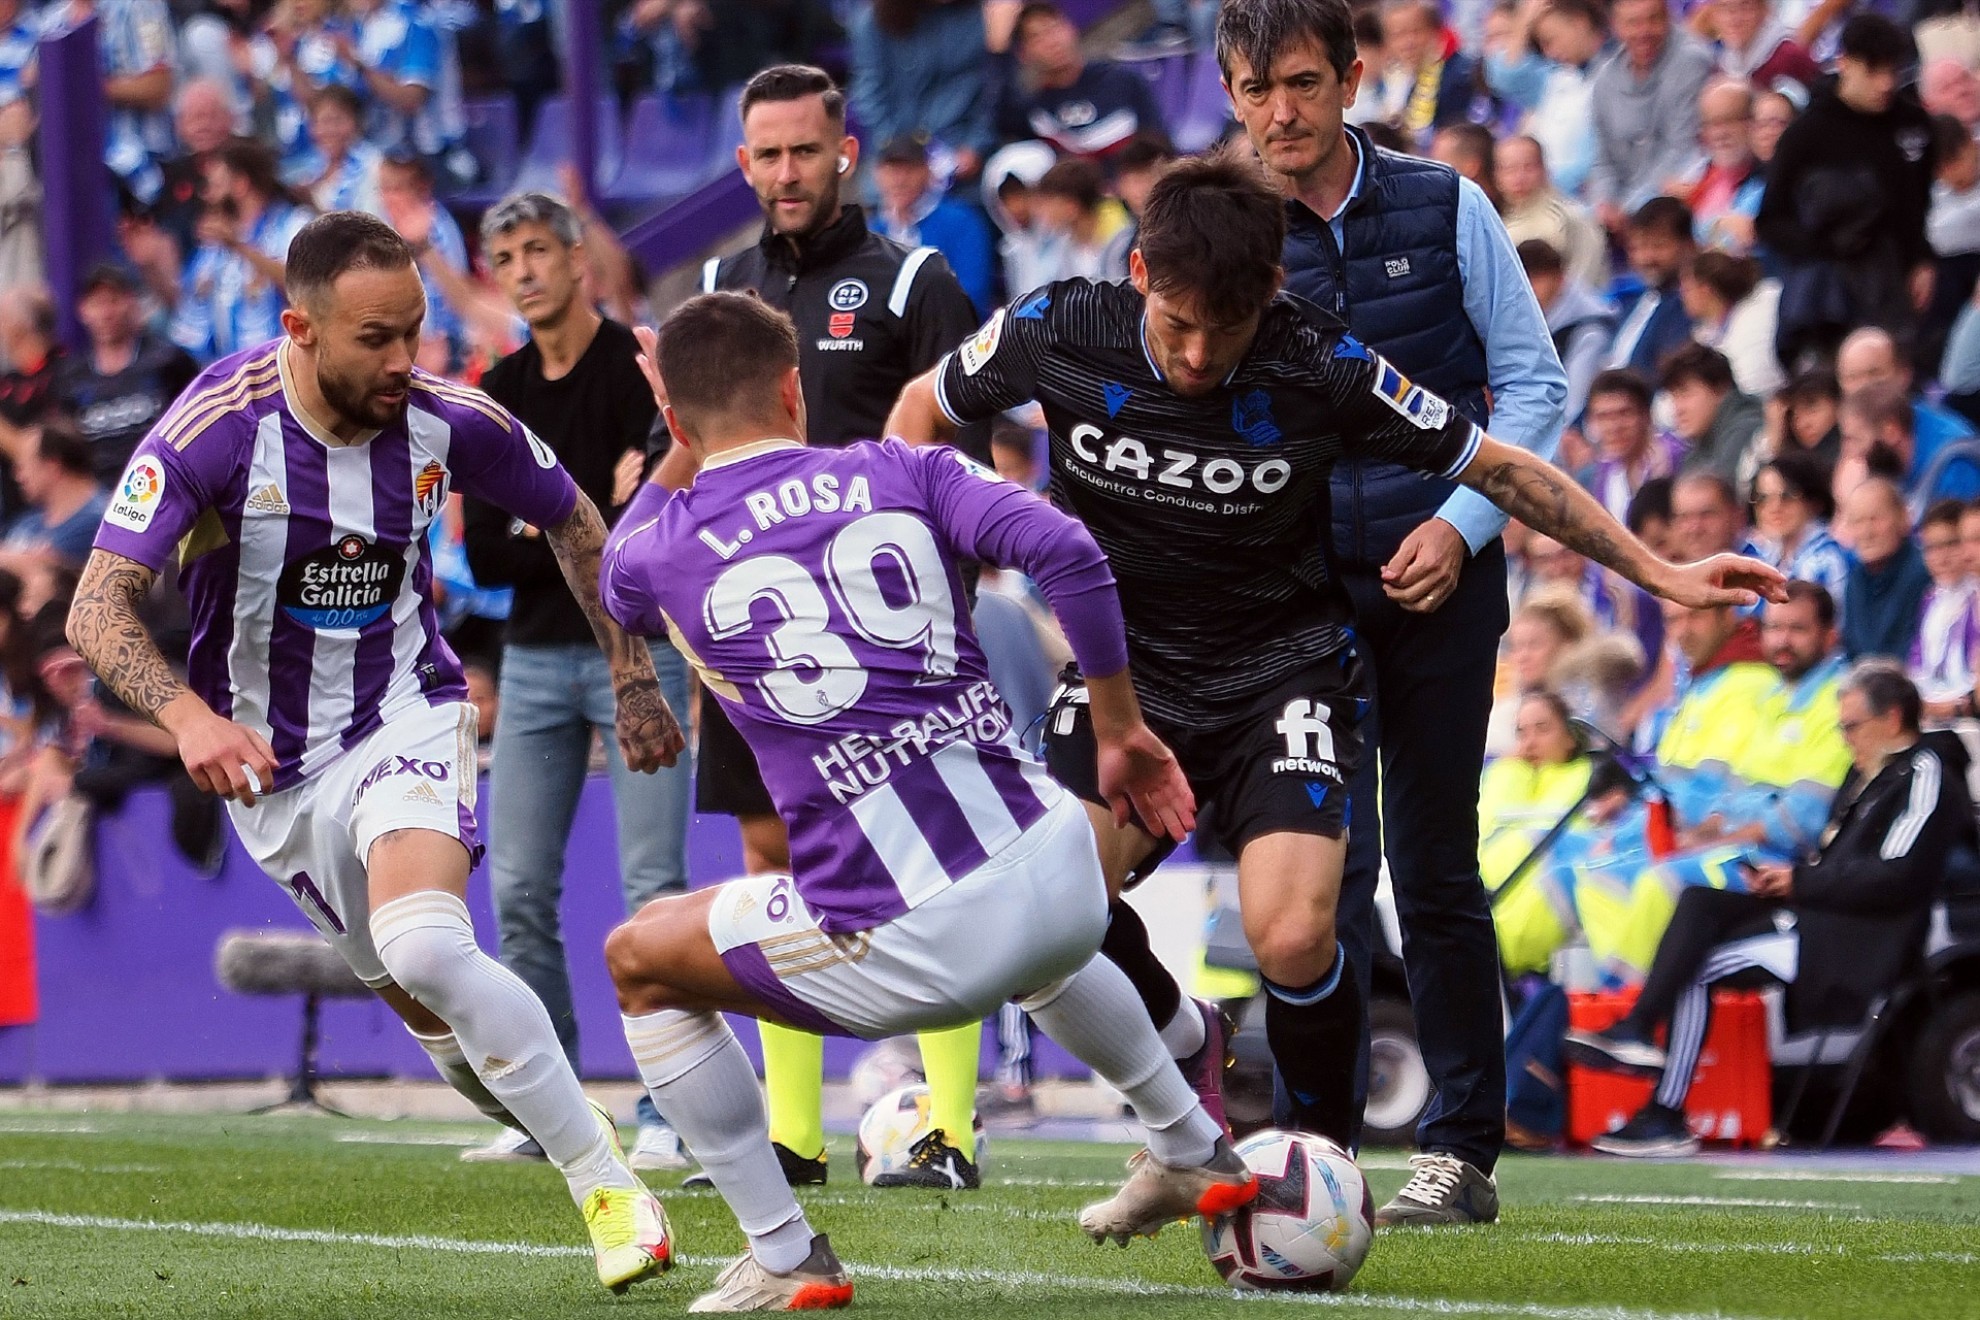 El crecimiento de Lucas Rosa en el Real Valladolid: "Trabajaba para cuando viniera esta oportunidad" thumbnail